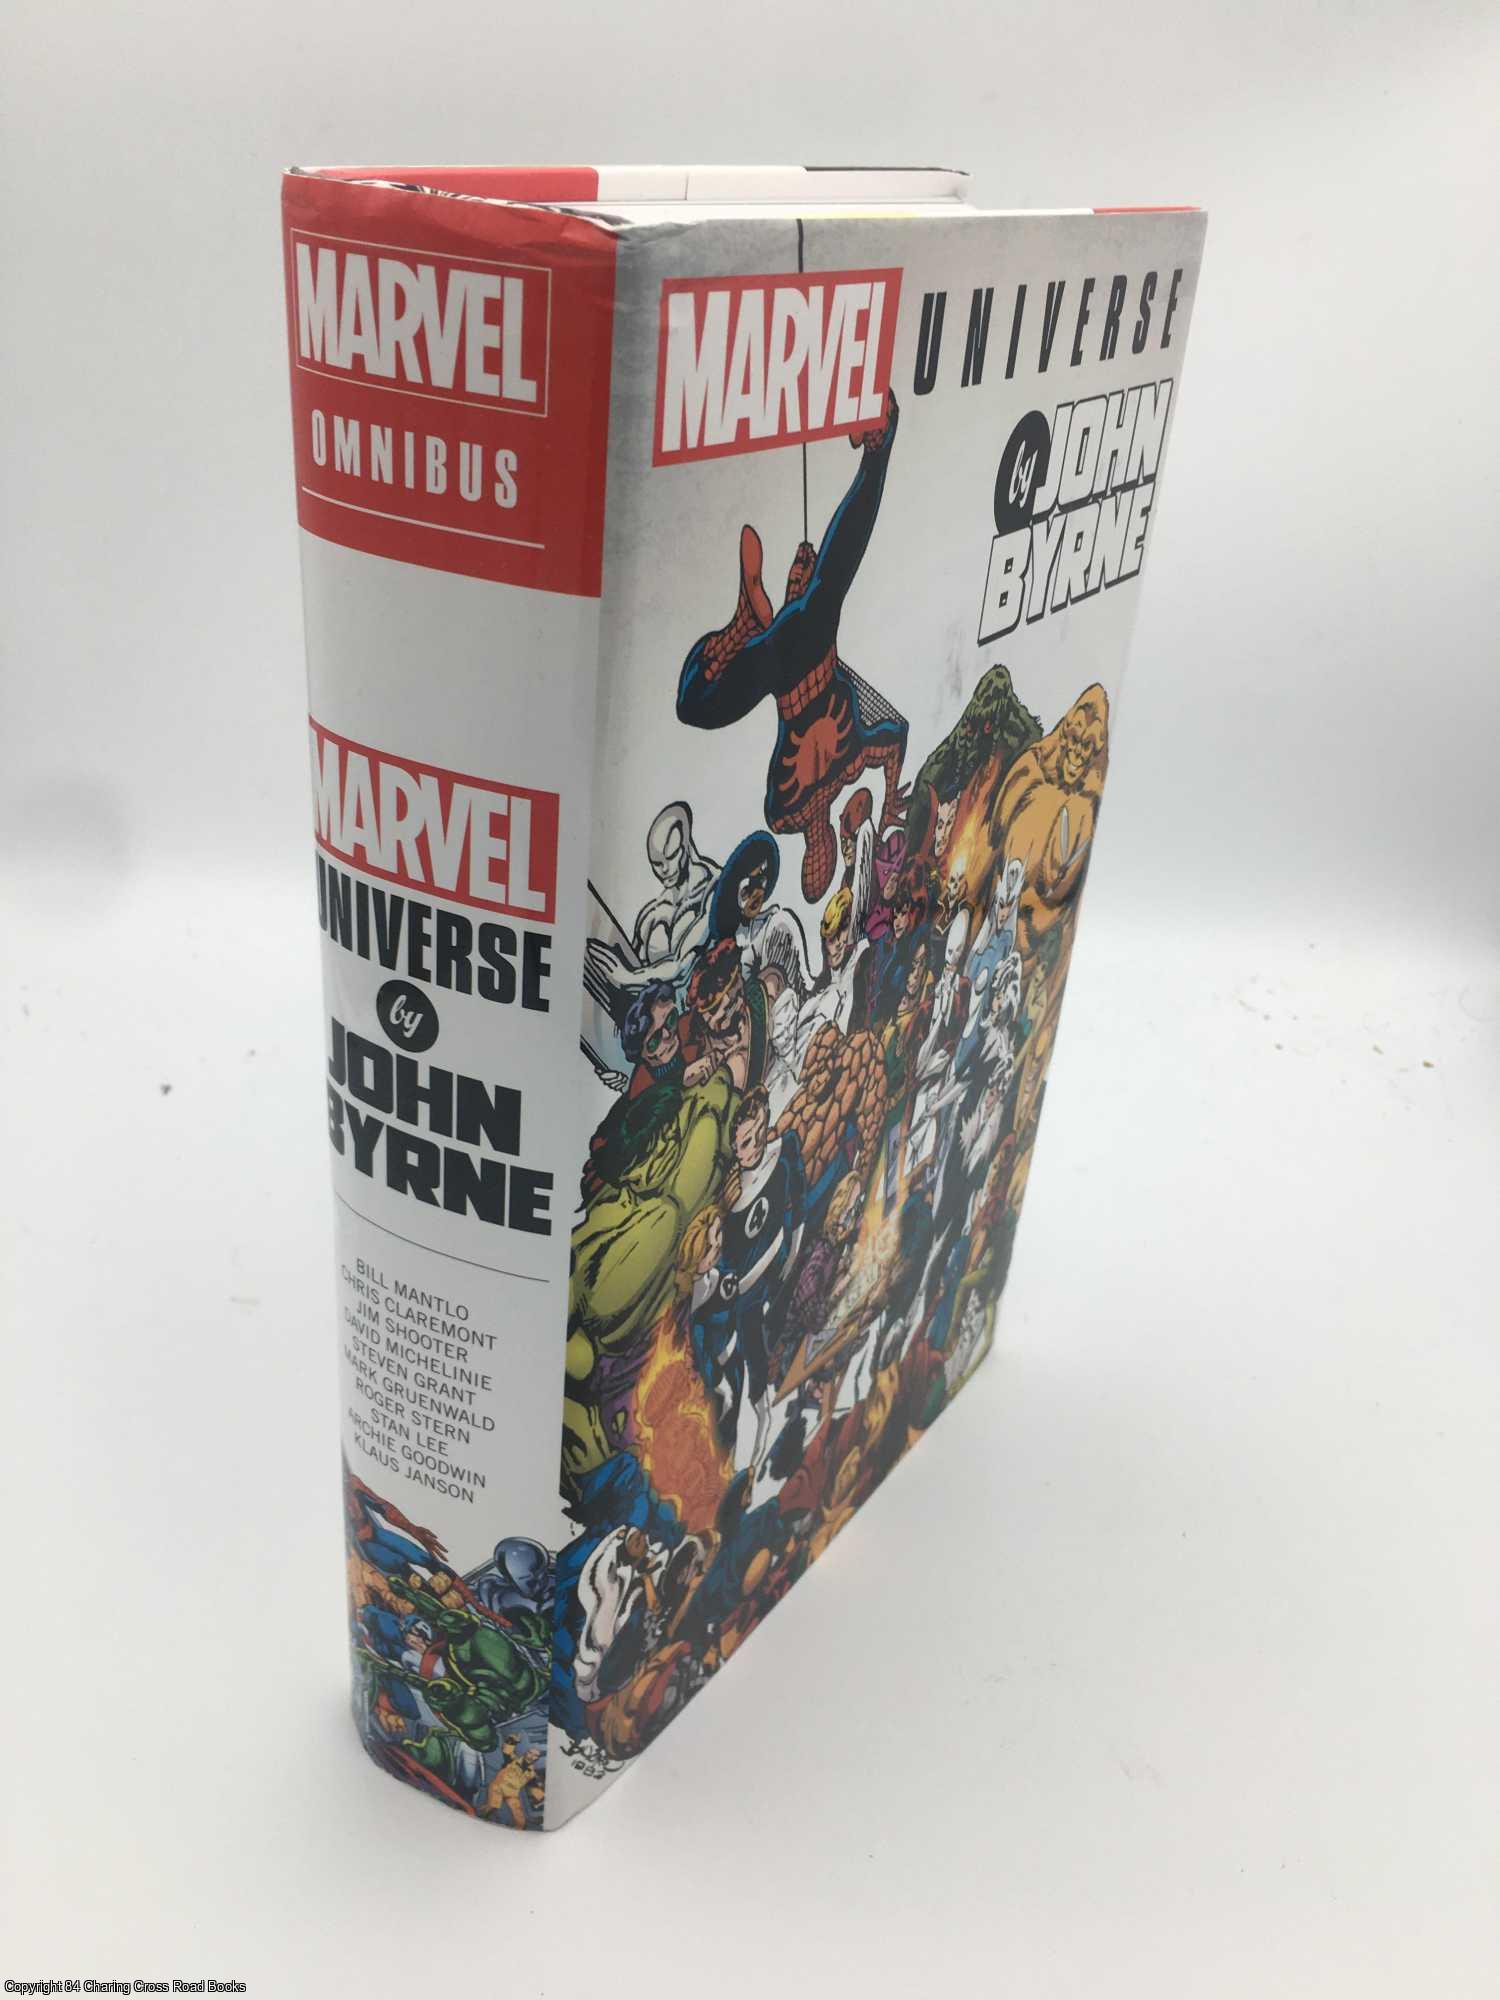 Byrne, John - Marvel Universe by John Byrne Omnibus